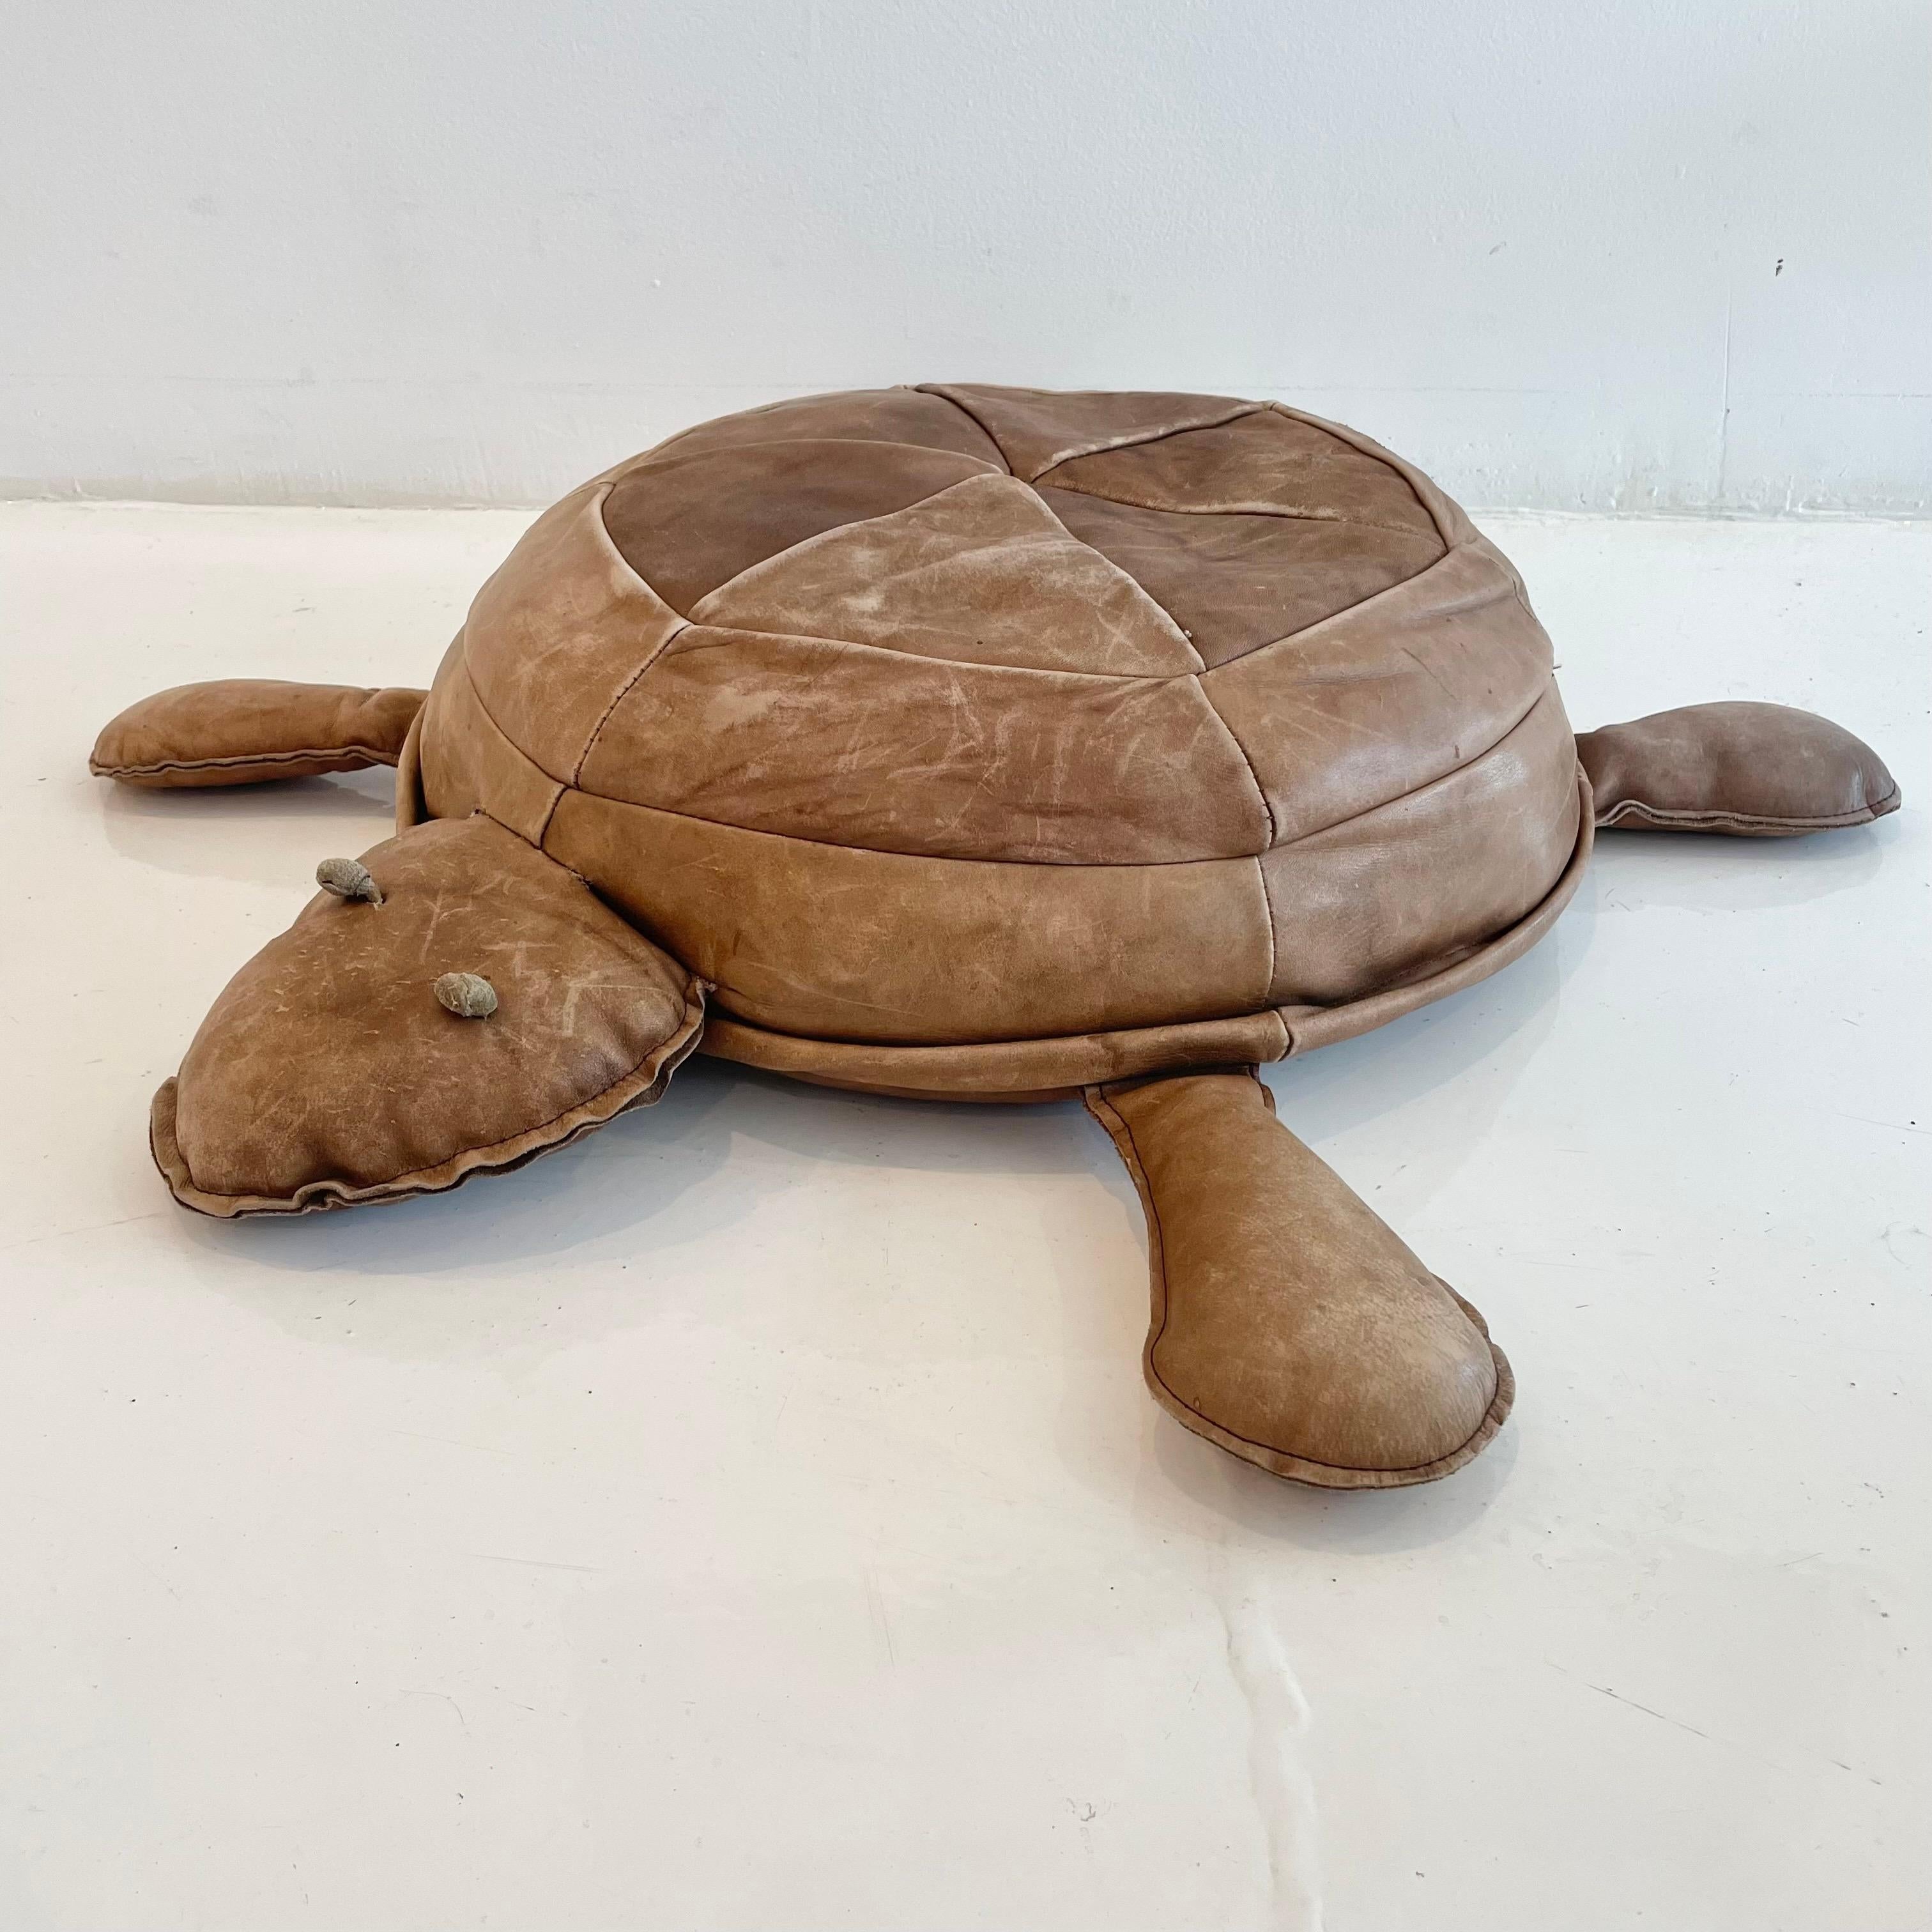 culver's turtle plush